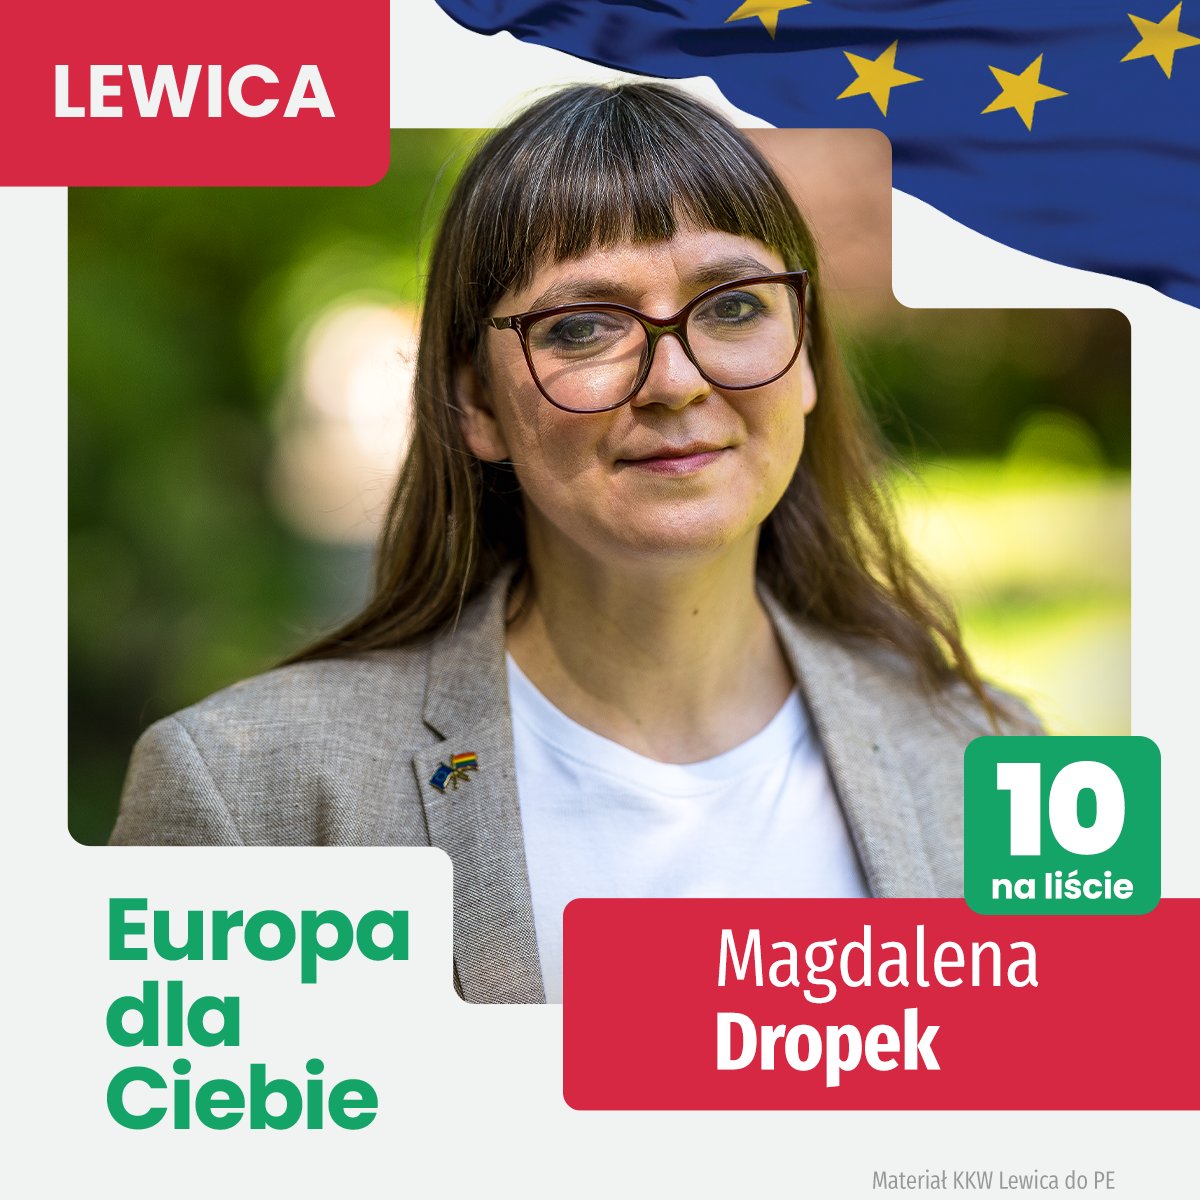 Cześć, Nazywam się Magda Dropek i jestem Twoją progresywną kandydatką do Parlamentu Europejskiego. Znajdziesz mnie na miejscu 10. na liście @__Lewica w okręgu numer 10 (Małopolska i Świętokrzyskie). Lewica chce Europy bliżej ludzi, przyjaznej, dostępnej, transparentnej. Europy